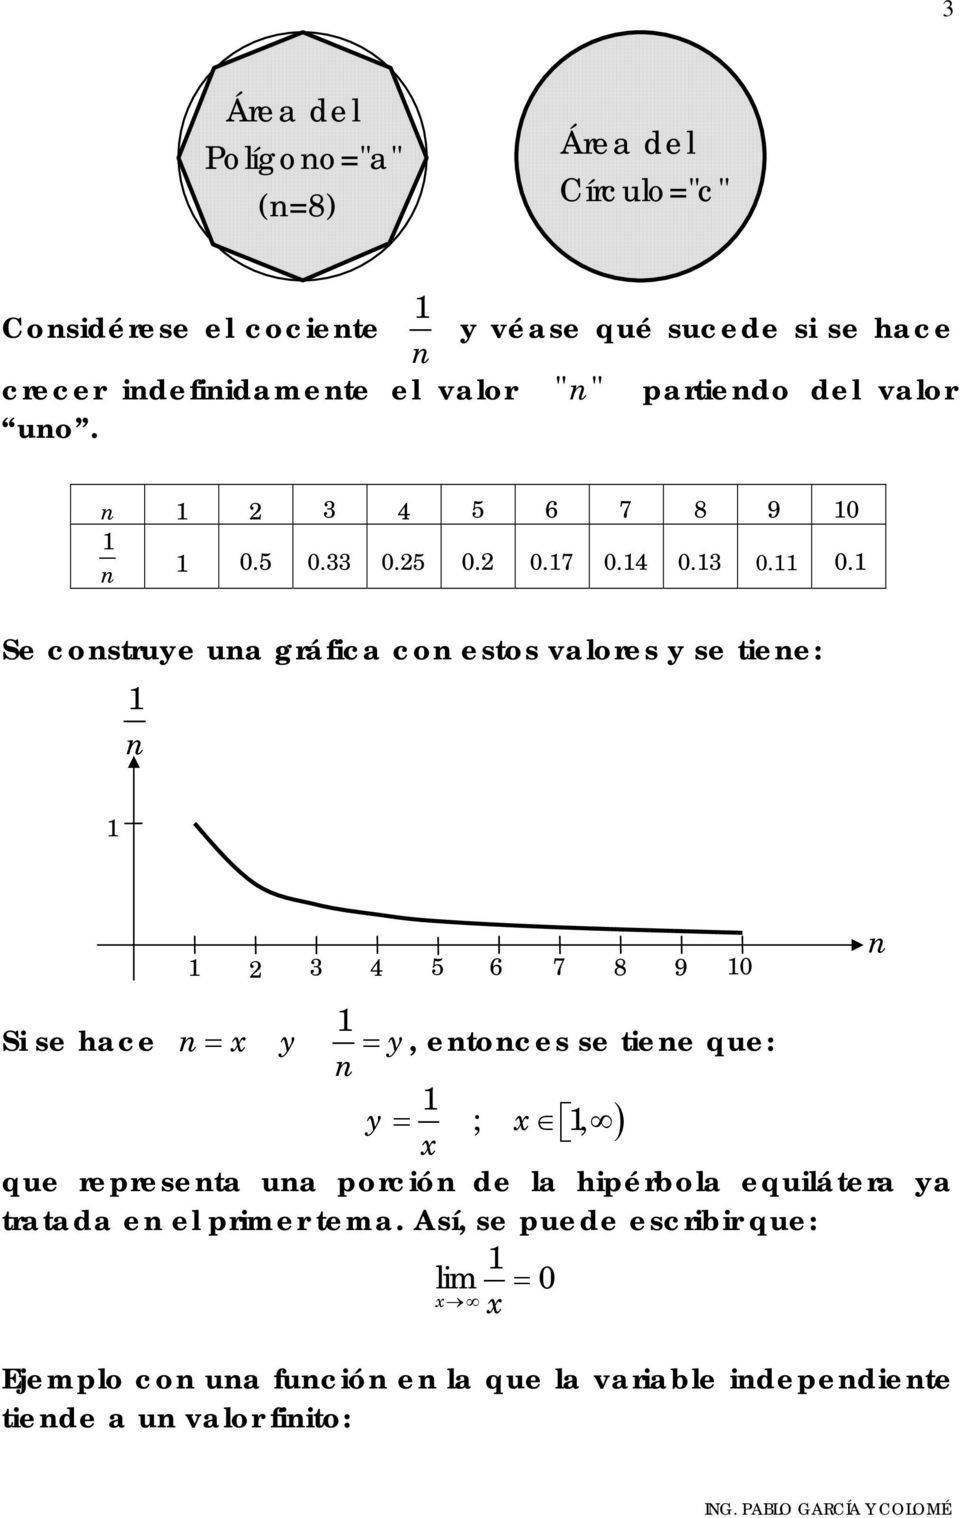 1 Se construye una gráfica con estos valores y se tiene: 1 n 1 1 3 4 5 6 7 8 9 10 1 Si se hace n= y = y, entonces se tiene que: n 1 y = ; 1, ) que